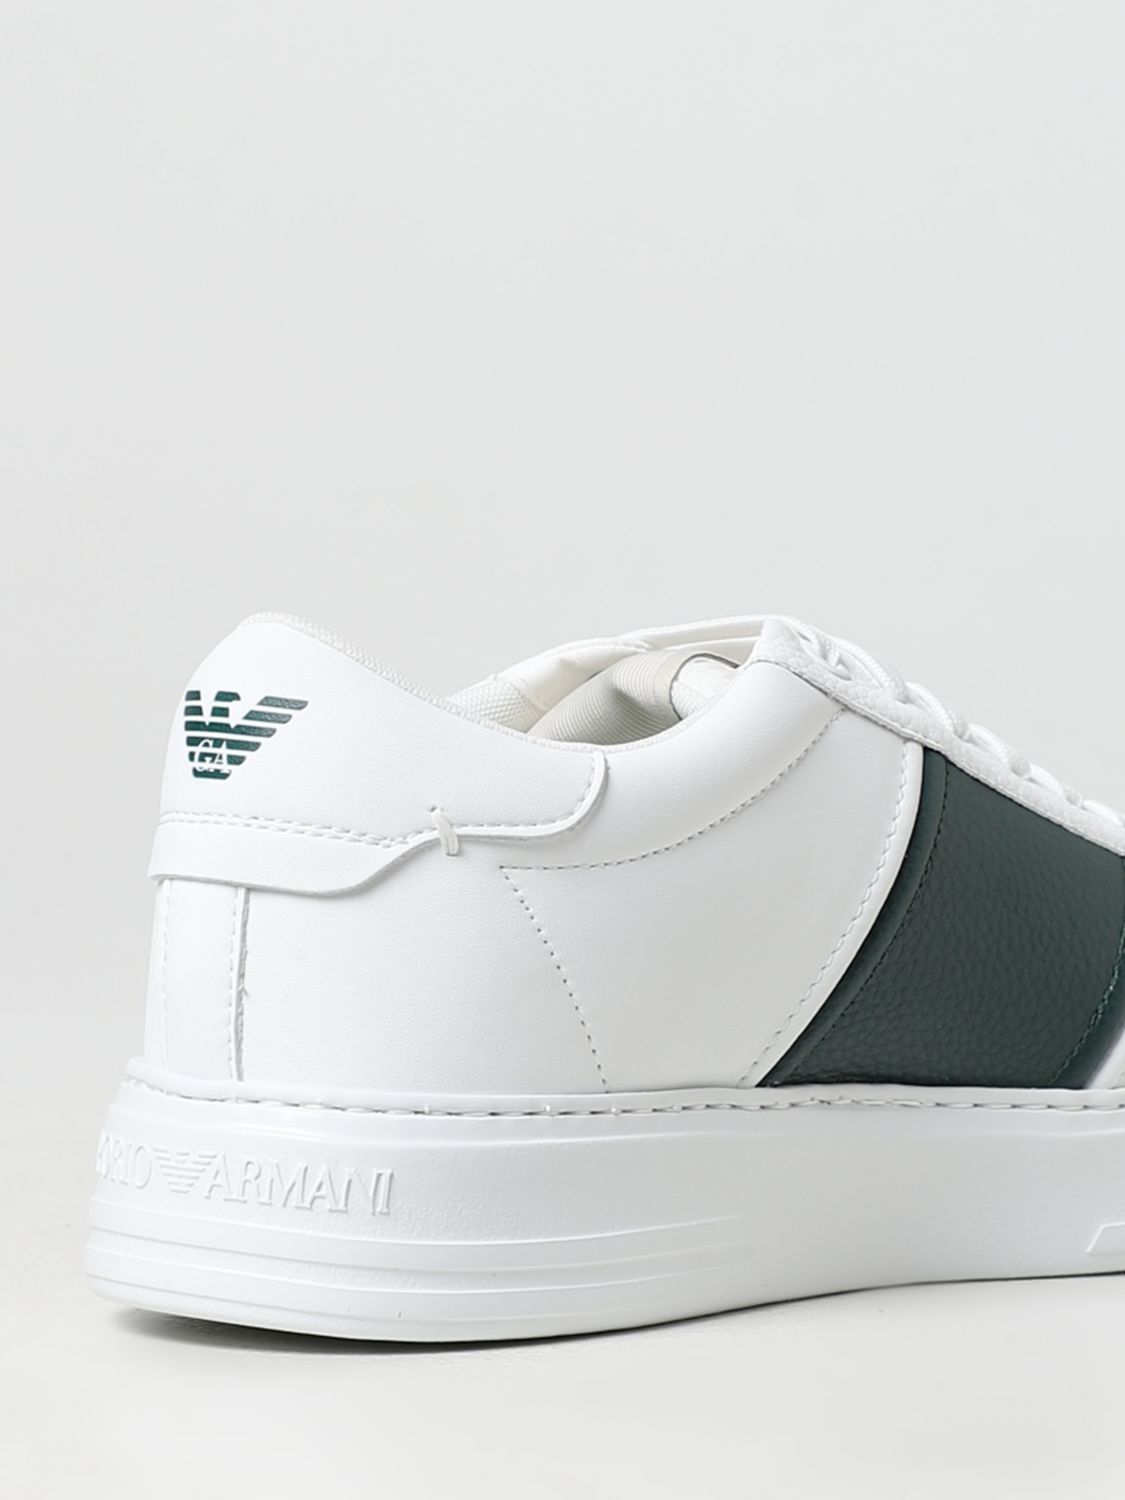 nieuws Wat mensen betreft vonk EMPORIO ARMANI: leather sneakers - White 1 | Emporio Armani sneakers  X4X570XN840 online on GIGLIO.COM